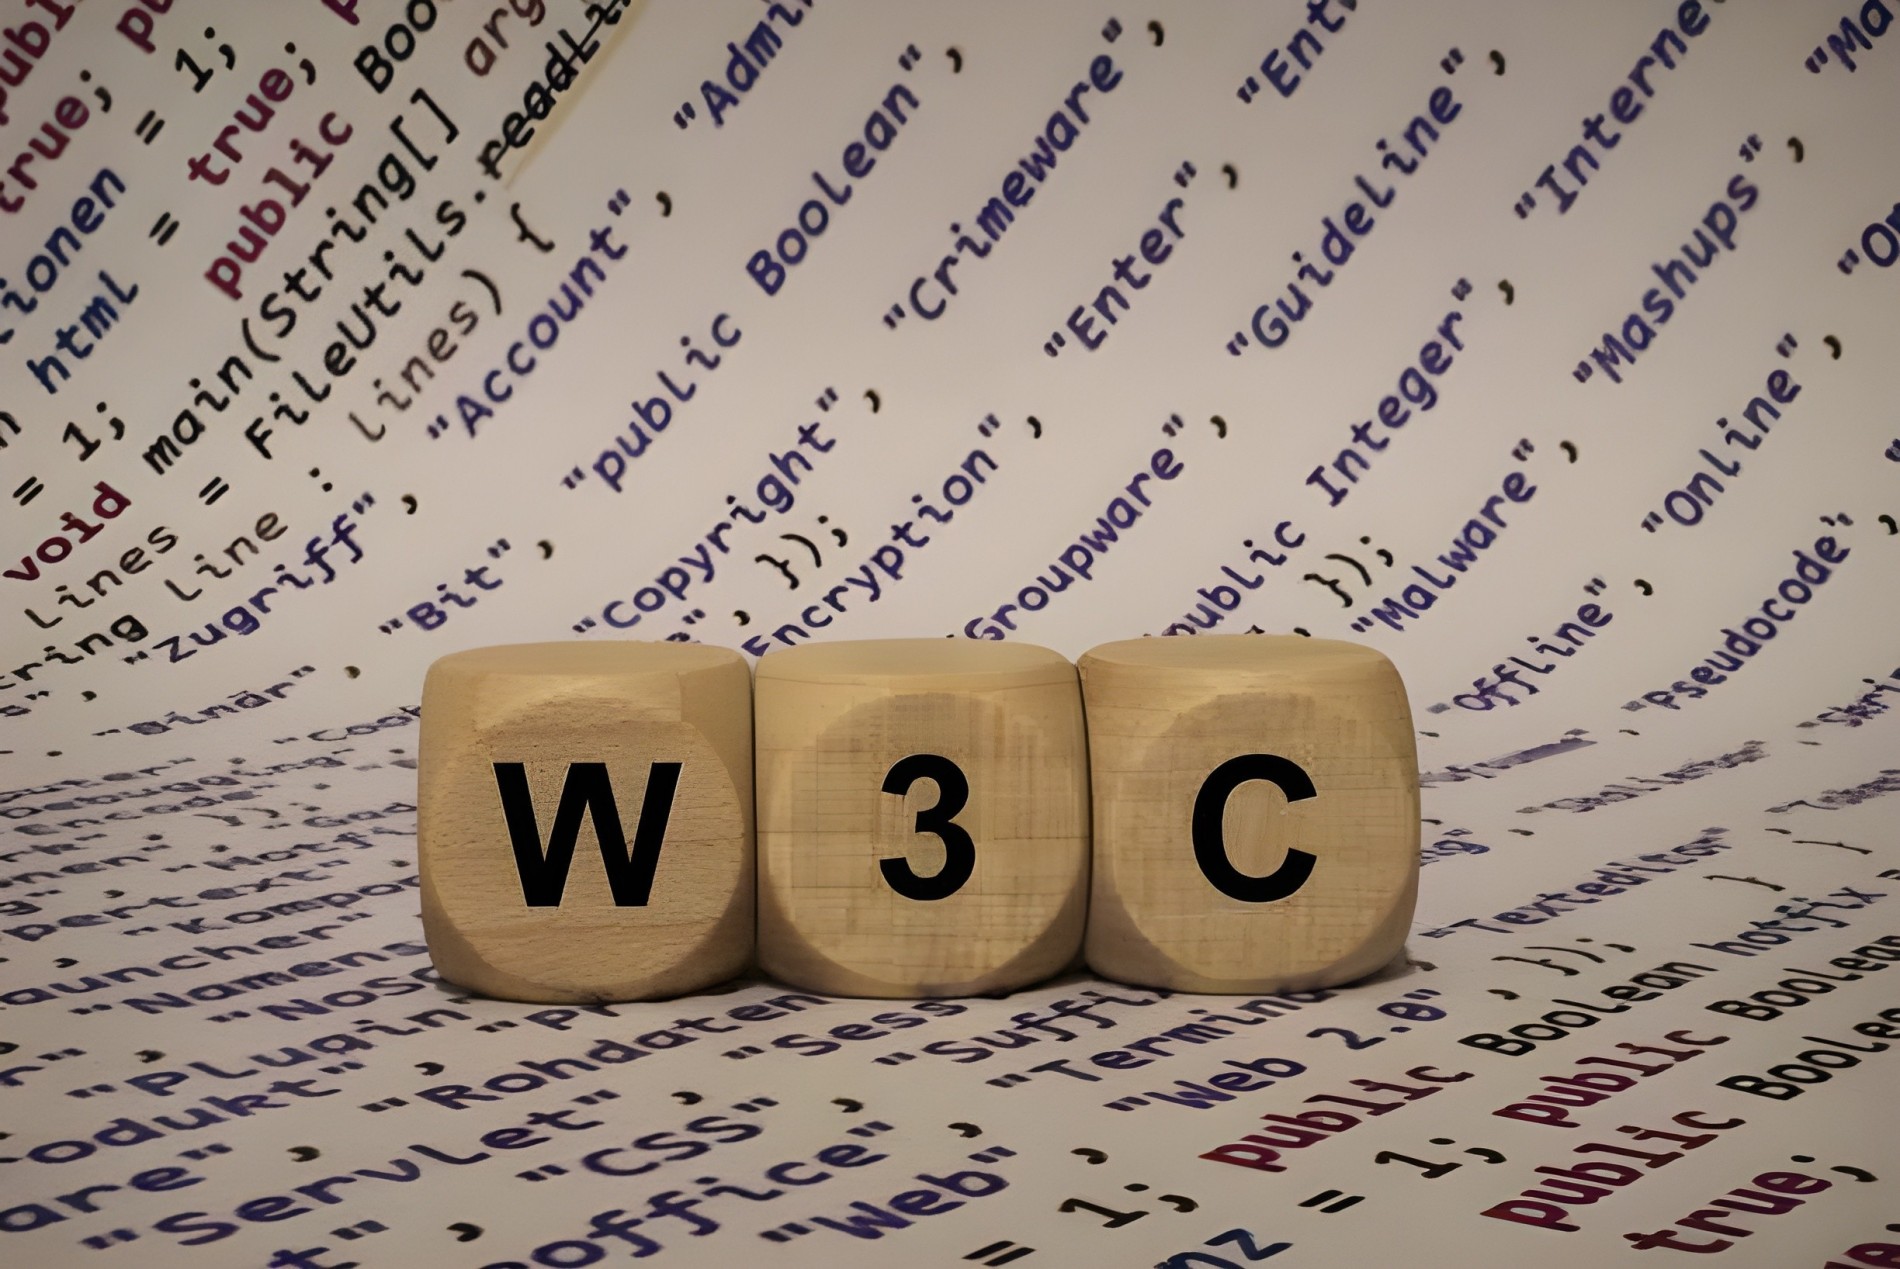 Thiết Kế Website Chuyên Nghiệp Theo Tiêu Chuẩn W3C: Tạo Ra Trang Web Vượt Trội,Tiêu chuẩn W3C, World Wide Web Consortium, Chuẩn hóa web, Thiết kế web, Tối ưu hóa trang web, Khả năng truy cập web, Tiêu chuẩn phát triển web, Tuân thủ tiêu chuẩn W3C, Tạo trang web chuẩn W3C, Tiện ích thiết kế web, Bảo mật trang web, Quy tắc thiết kế web, SEO và W3C, Tương thích trình duyệt, Công nghệ web, Tiêu chuẩn HTML/CSS, Tạo giao diện web chuyên nghiệp, Thiết kế web responsive, Mã nguồn sạch, Hướng dẫn W3C cho thiết kế web,